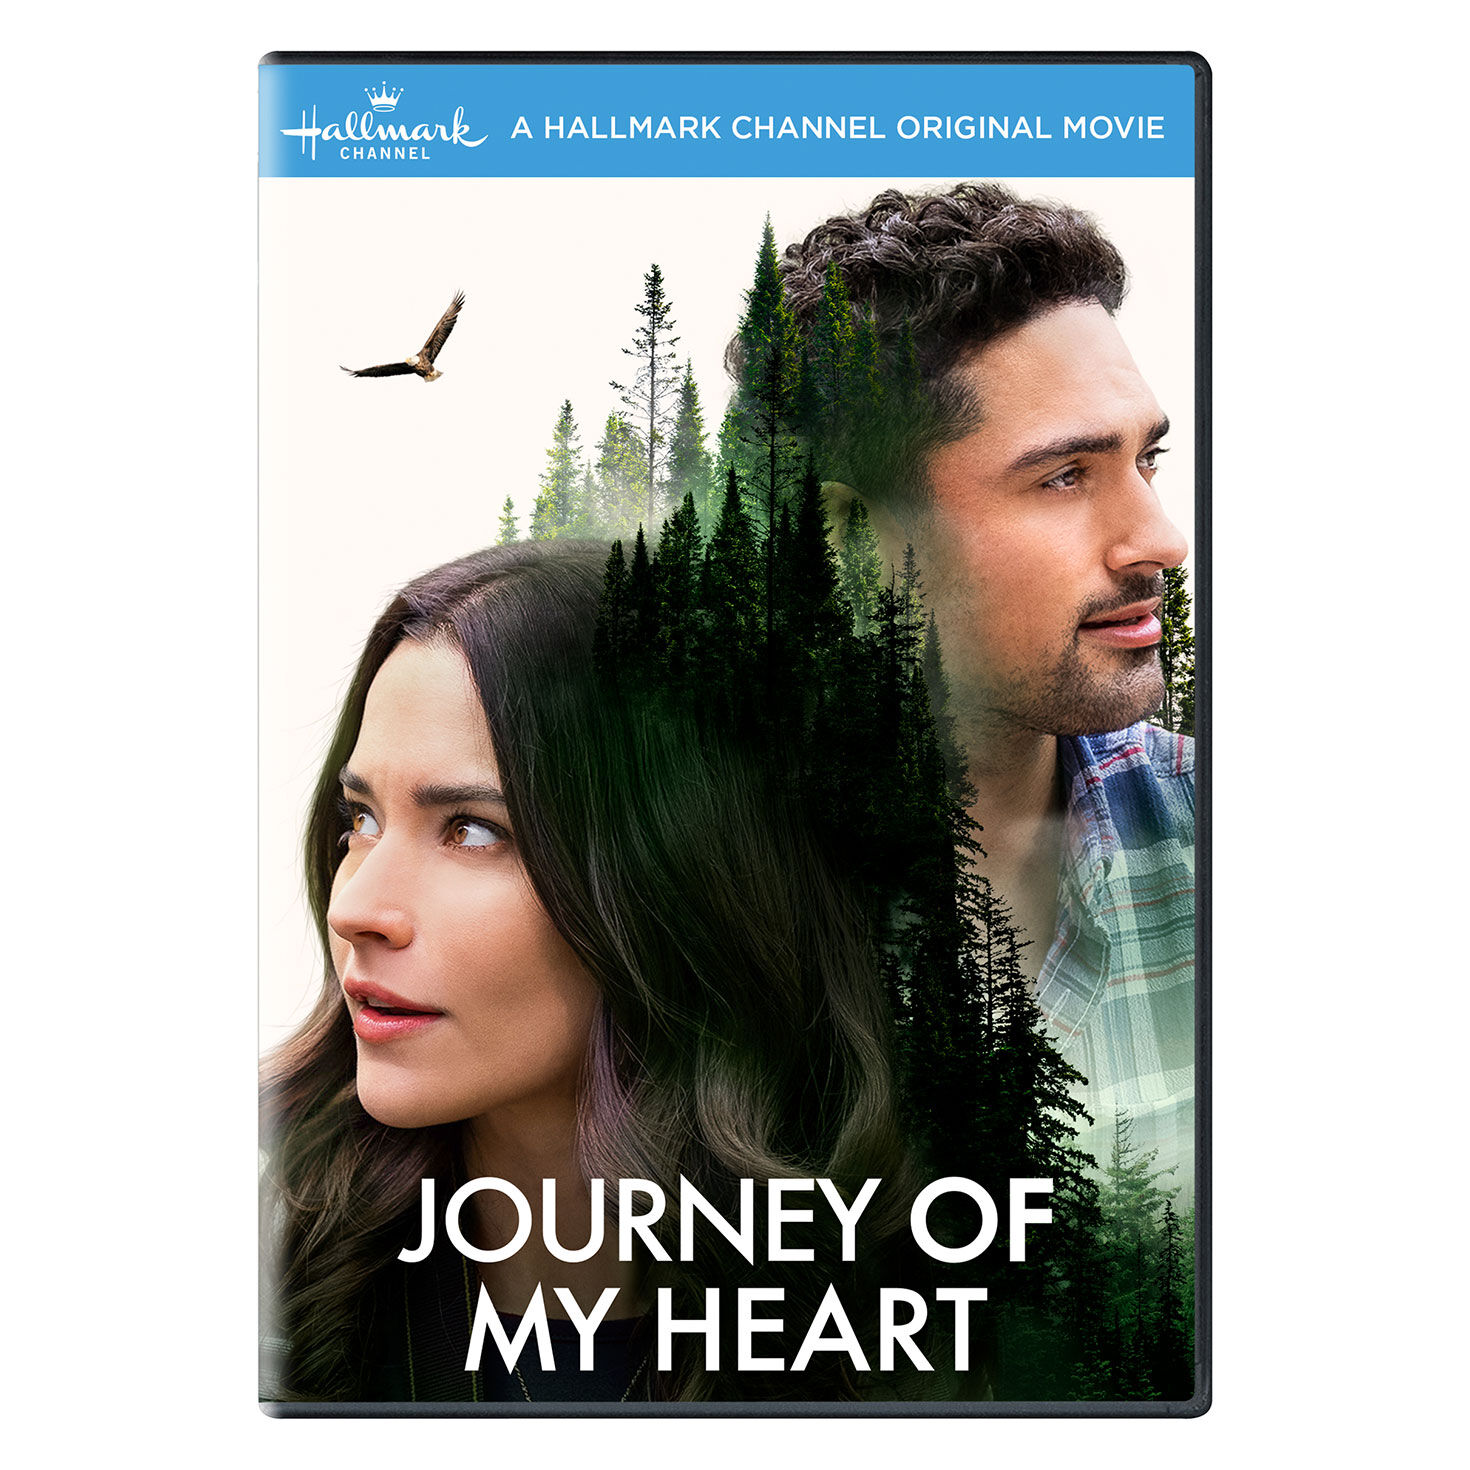 journey of my heart movie soundtrack